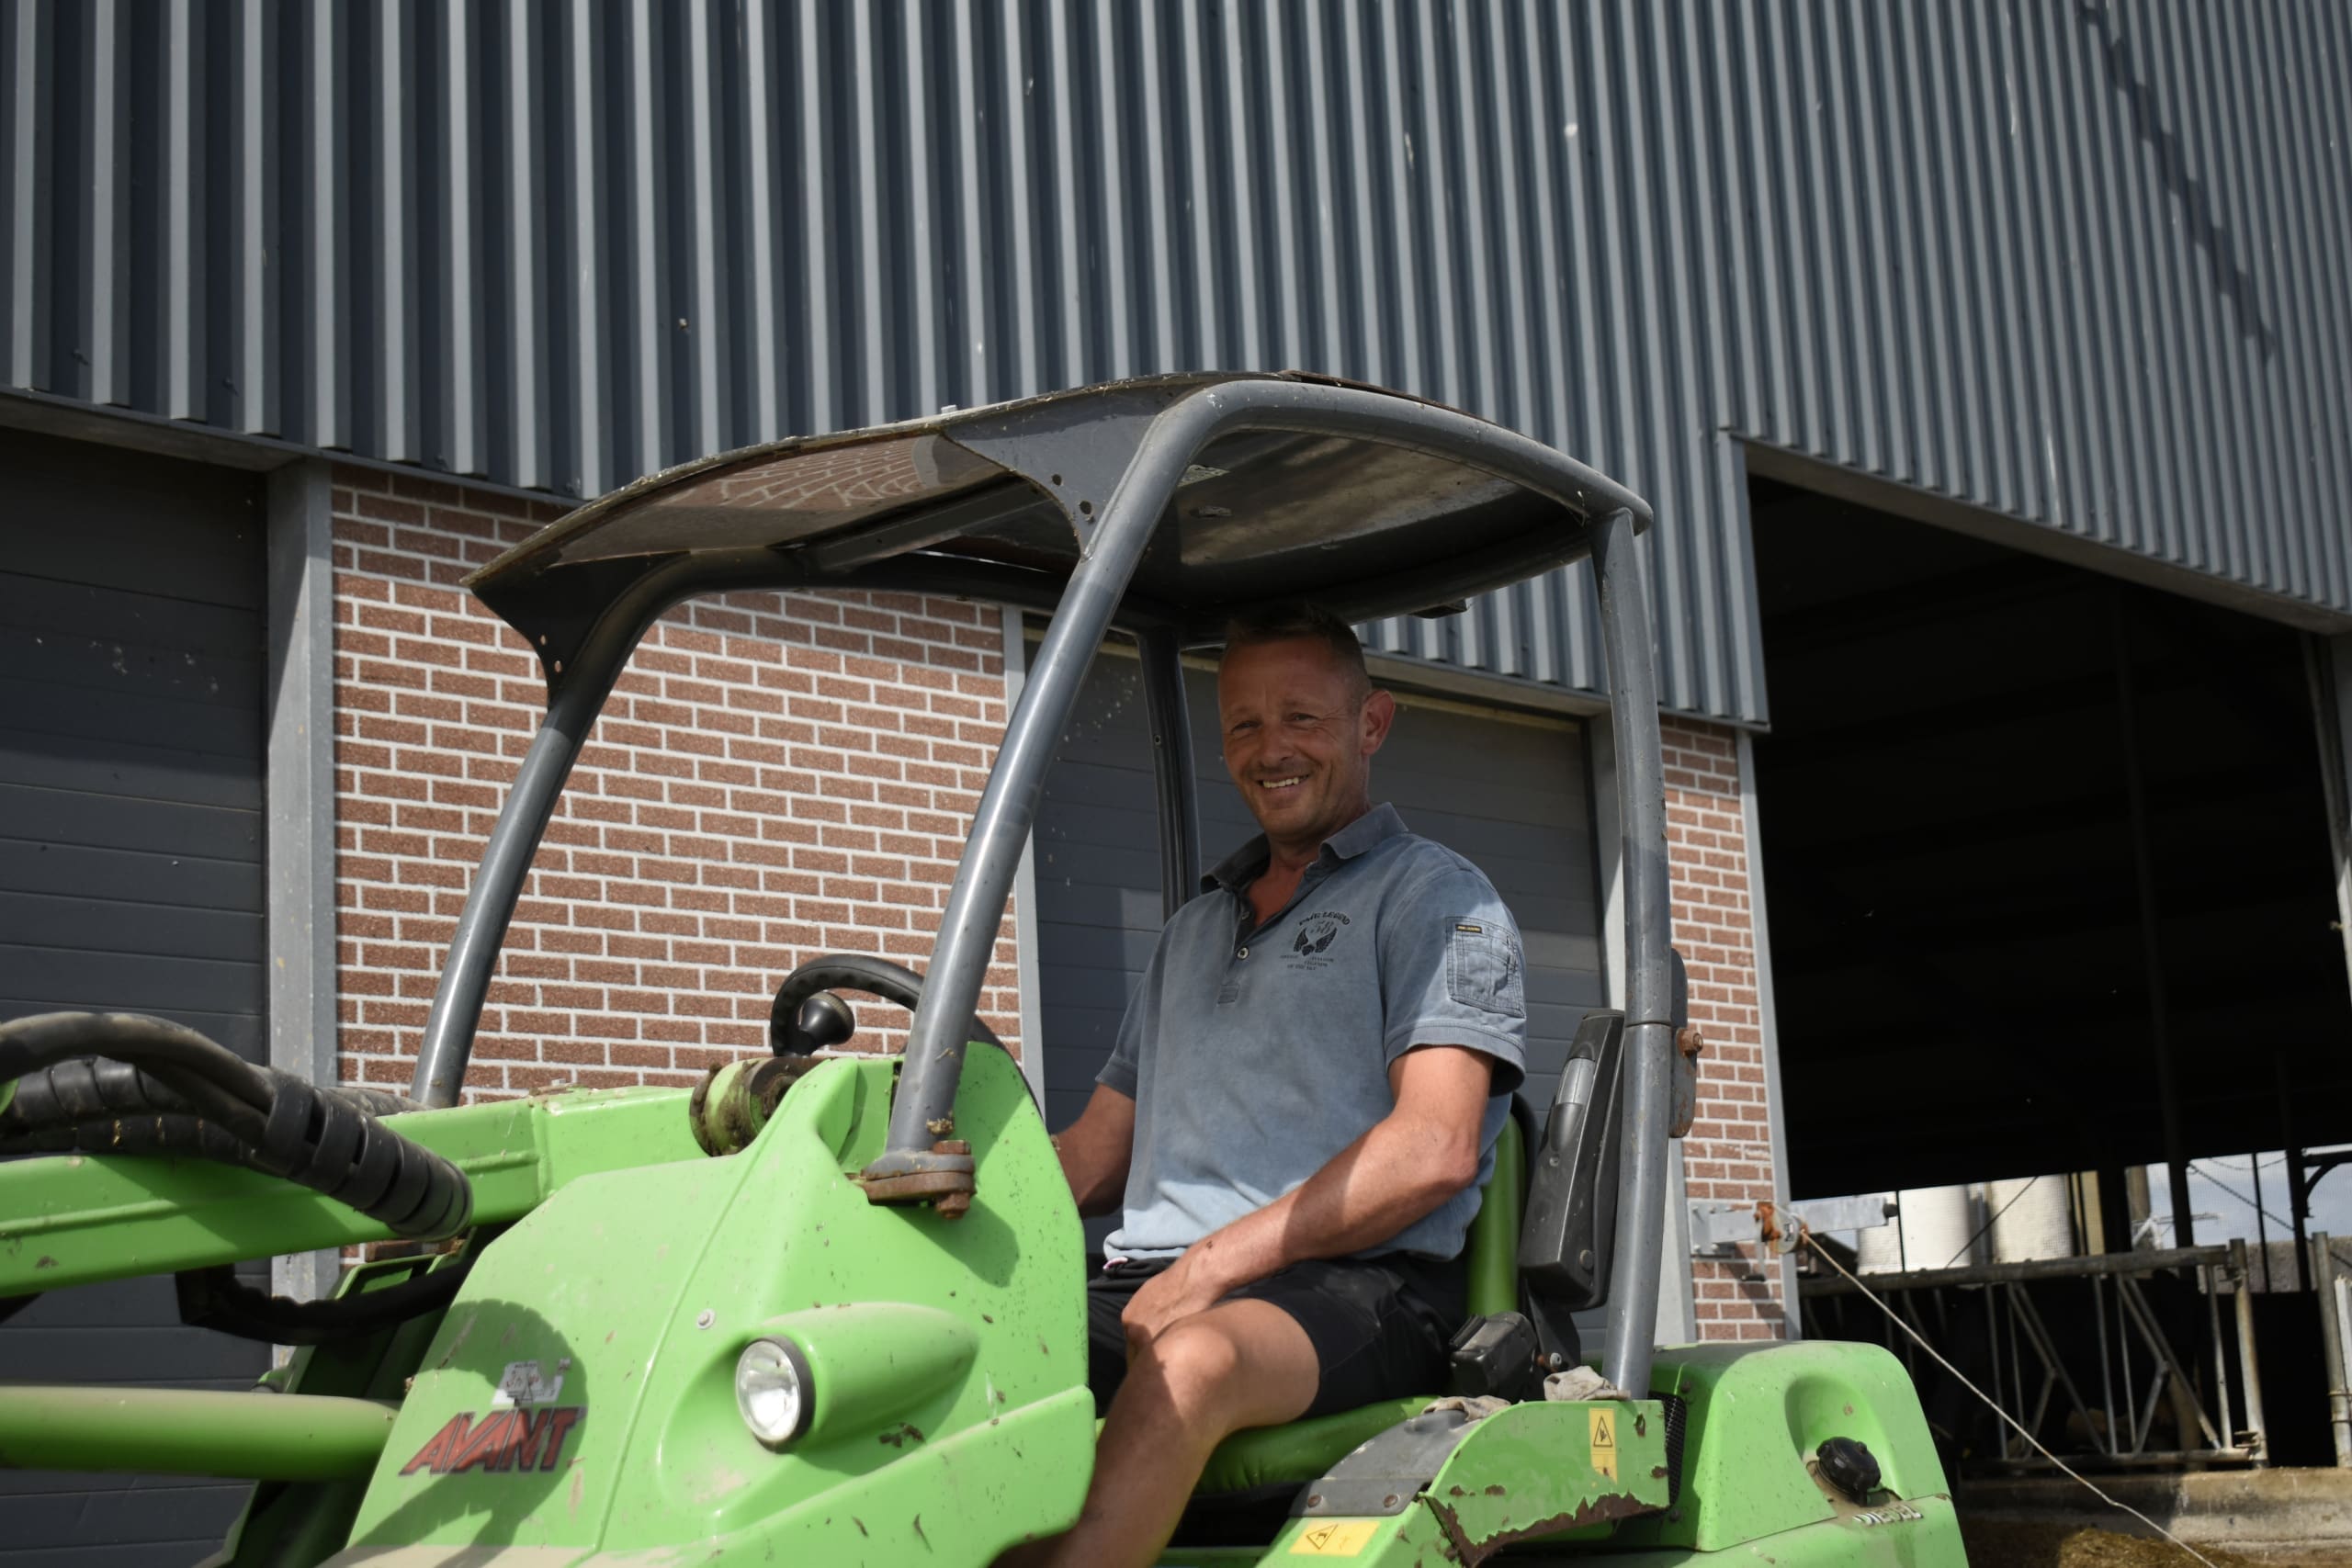 Melkveehouder Henk-Jan Breeuwsma op zijn shovel, klaar om de gescheiden mest uit de bunker te scheppen